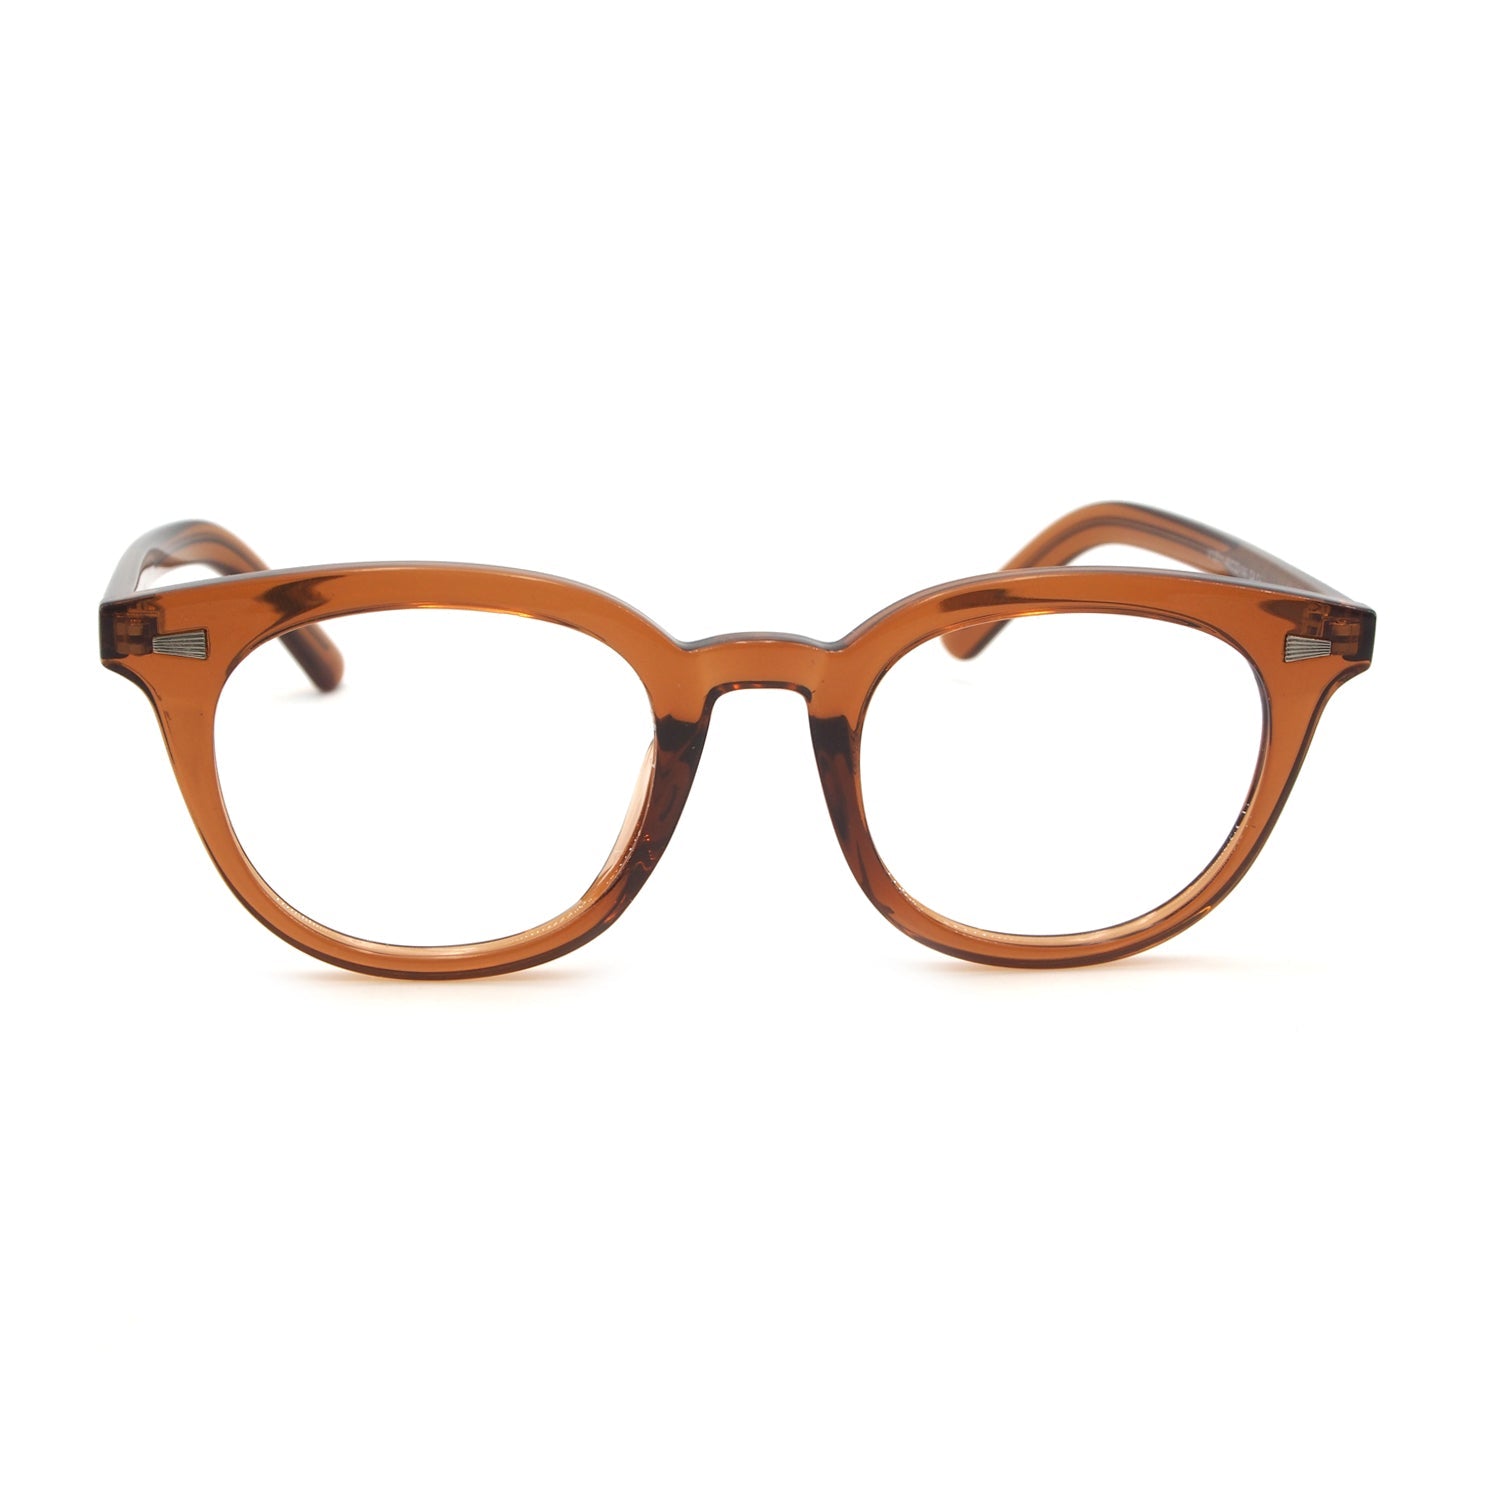 Declan in Cinnamon Eyeglasses - sightonomy